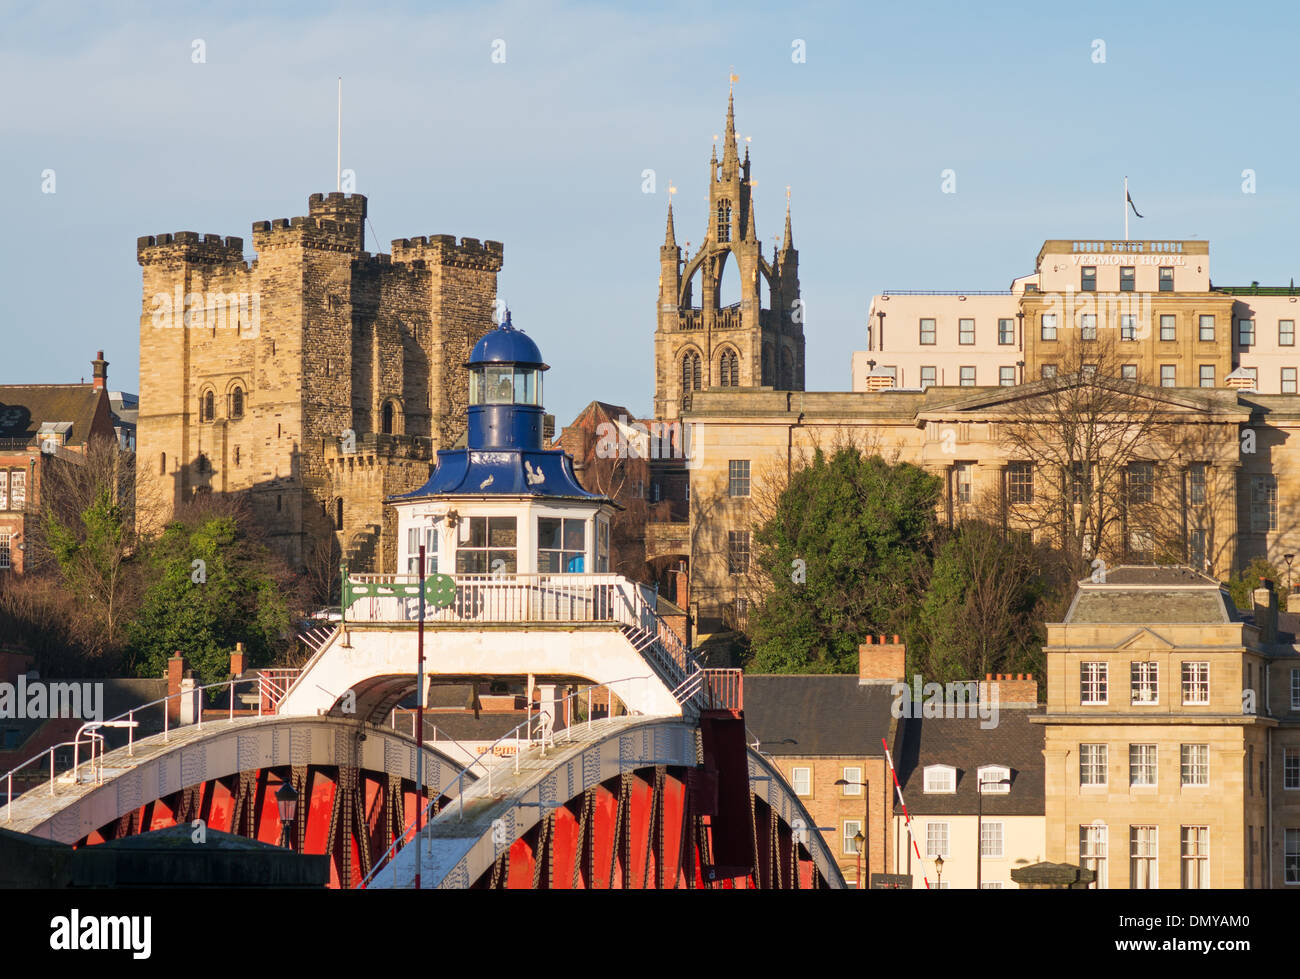 Newcastle upon Tyne skyline, castello, la cattedrale, il ponte girevole, North East England, Regno Unito Foto Stock